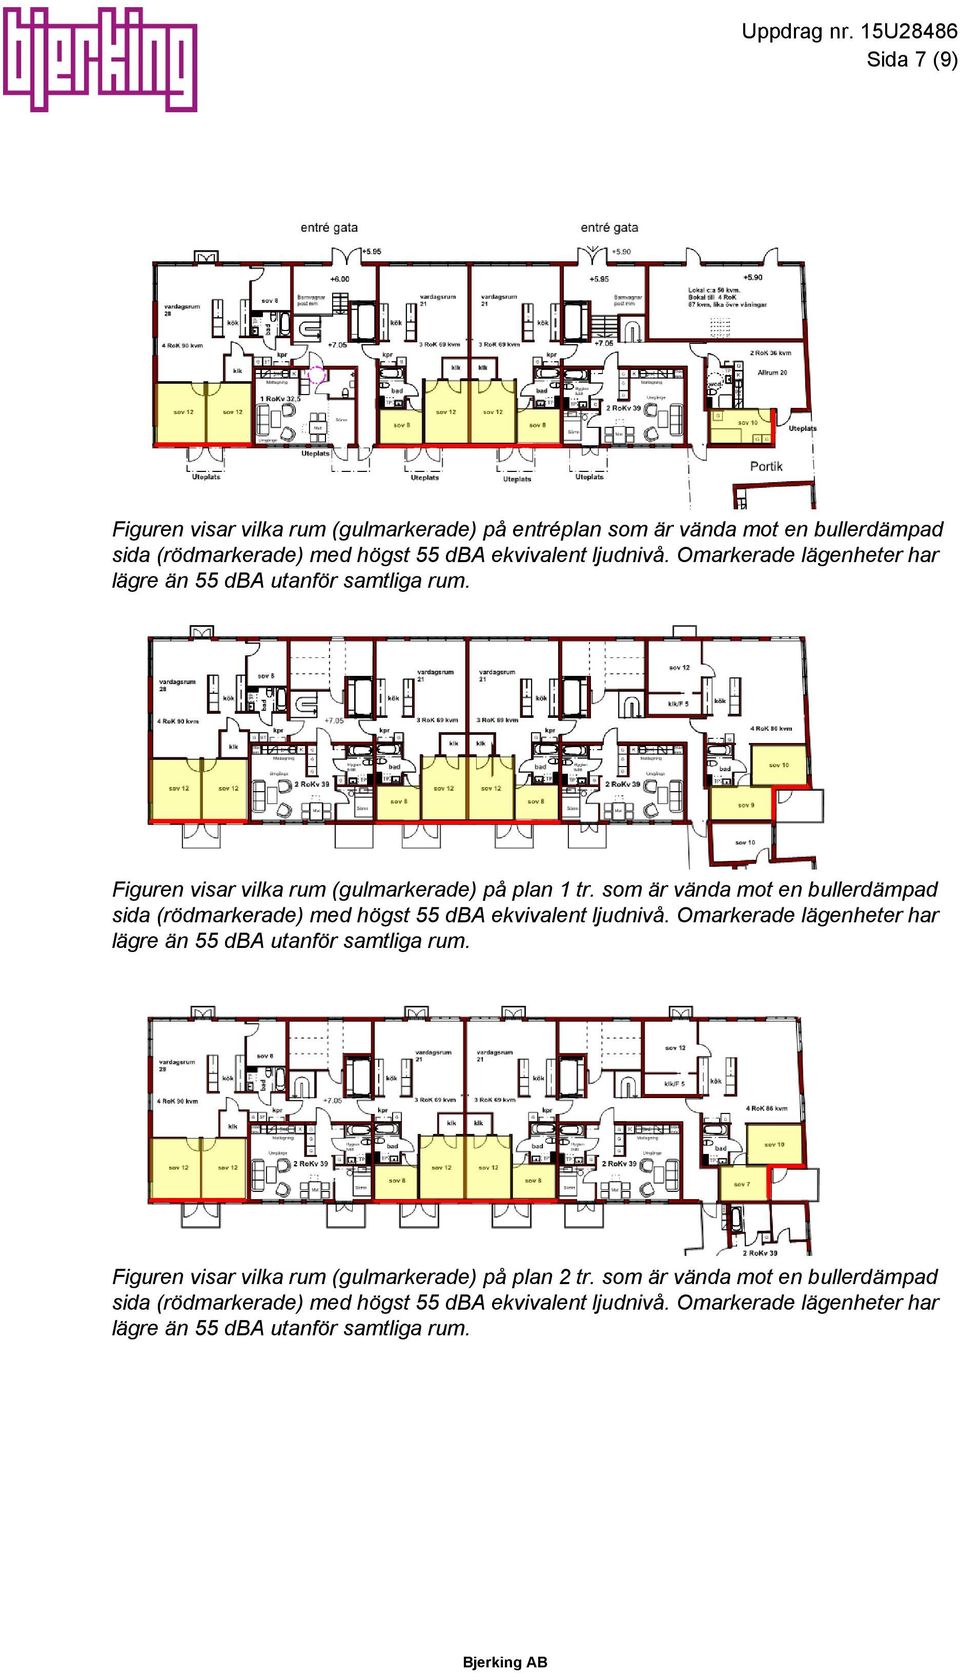 Omarkerade lägenheter har lägre än 55 dba utanför samtliga rum. Figuren visar vilka rum (gulmarkerade) på plan 1 tr.